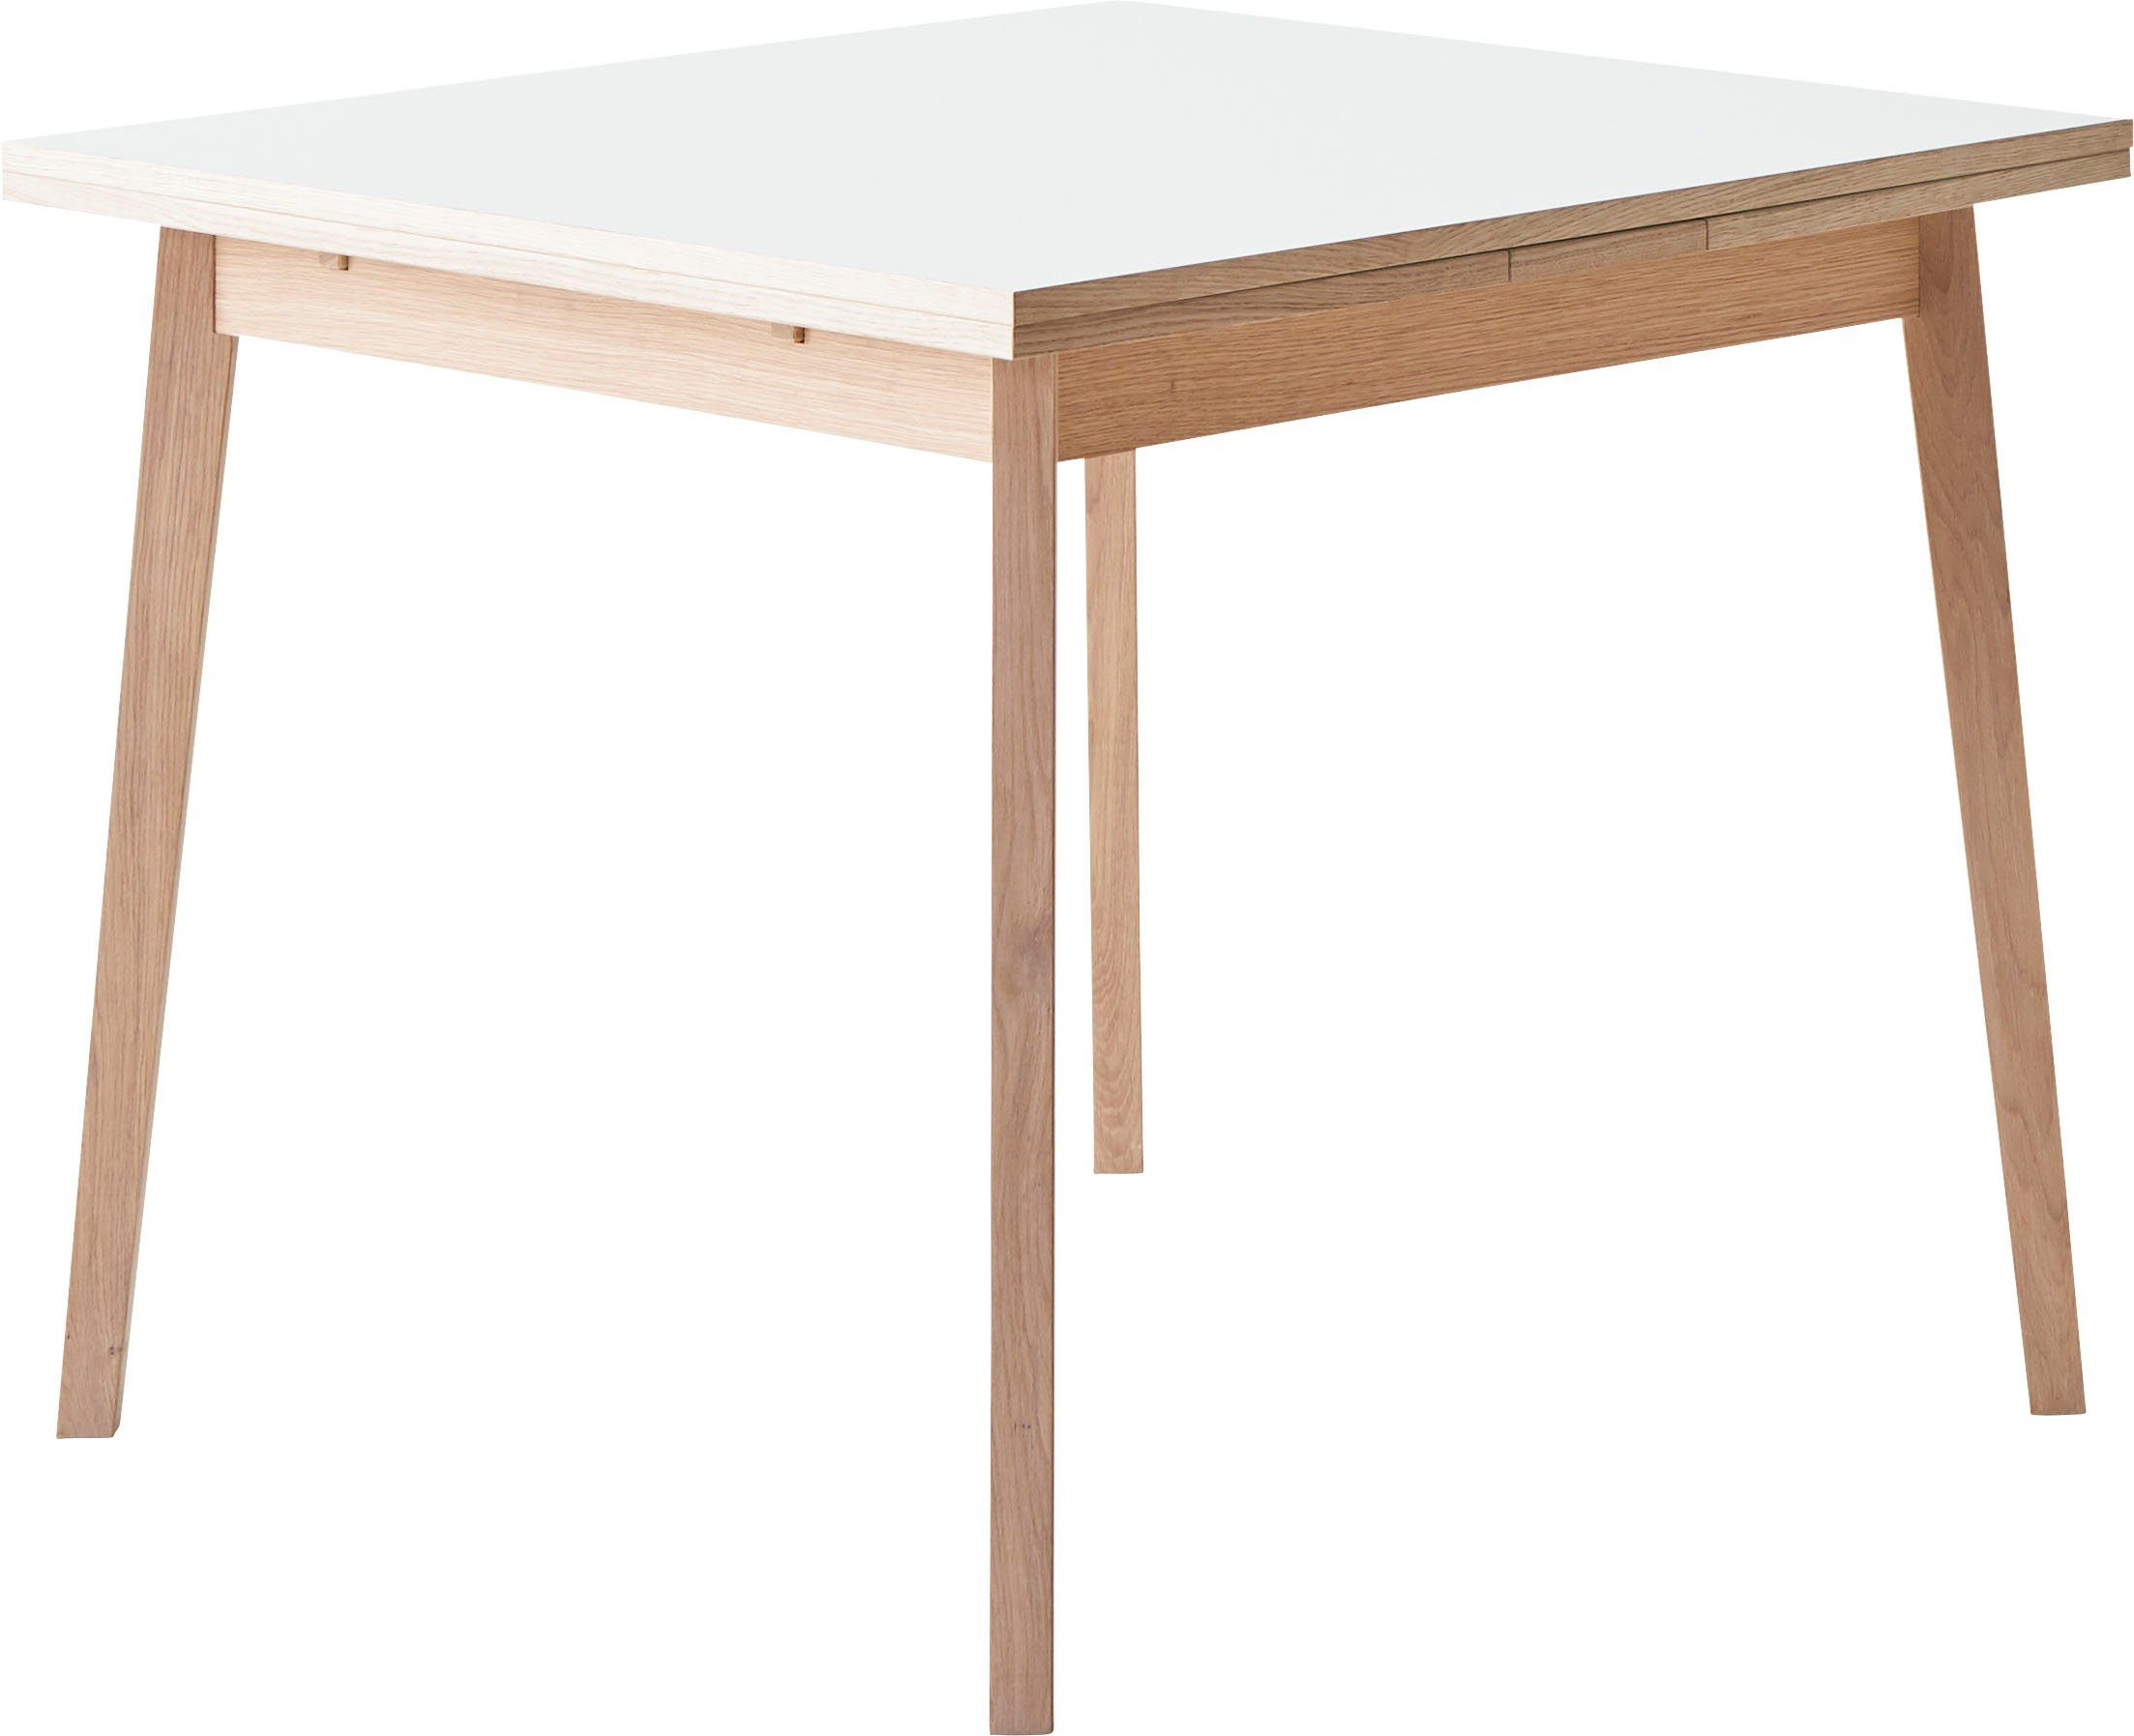 Hammel Furniture Basic cm, by aus Massivholz Tischplatte aus Weiß/Naturfarben Single, Gestell Melamin, 90(164)x90 Esstisch Hammel